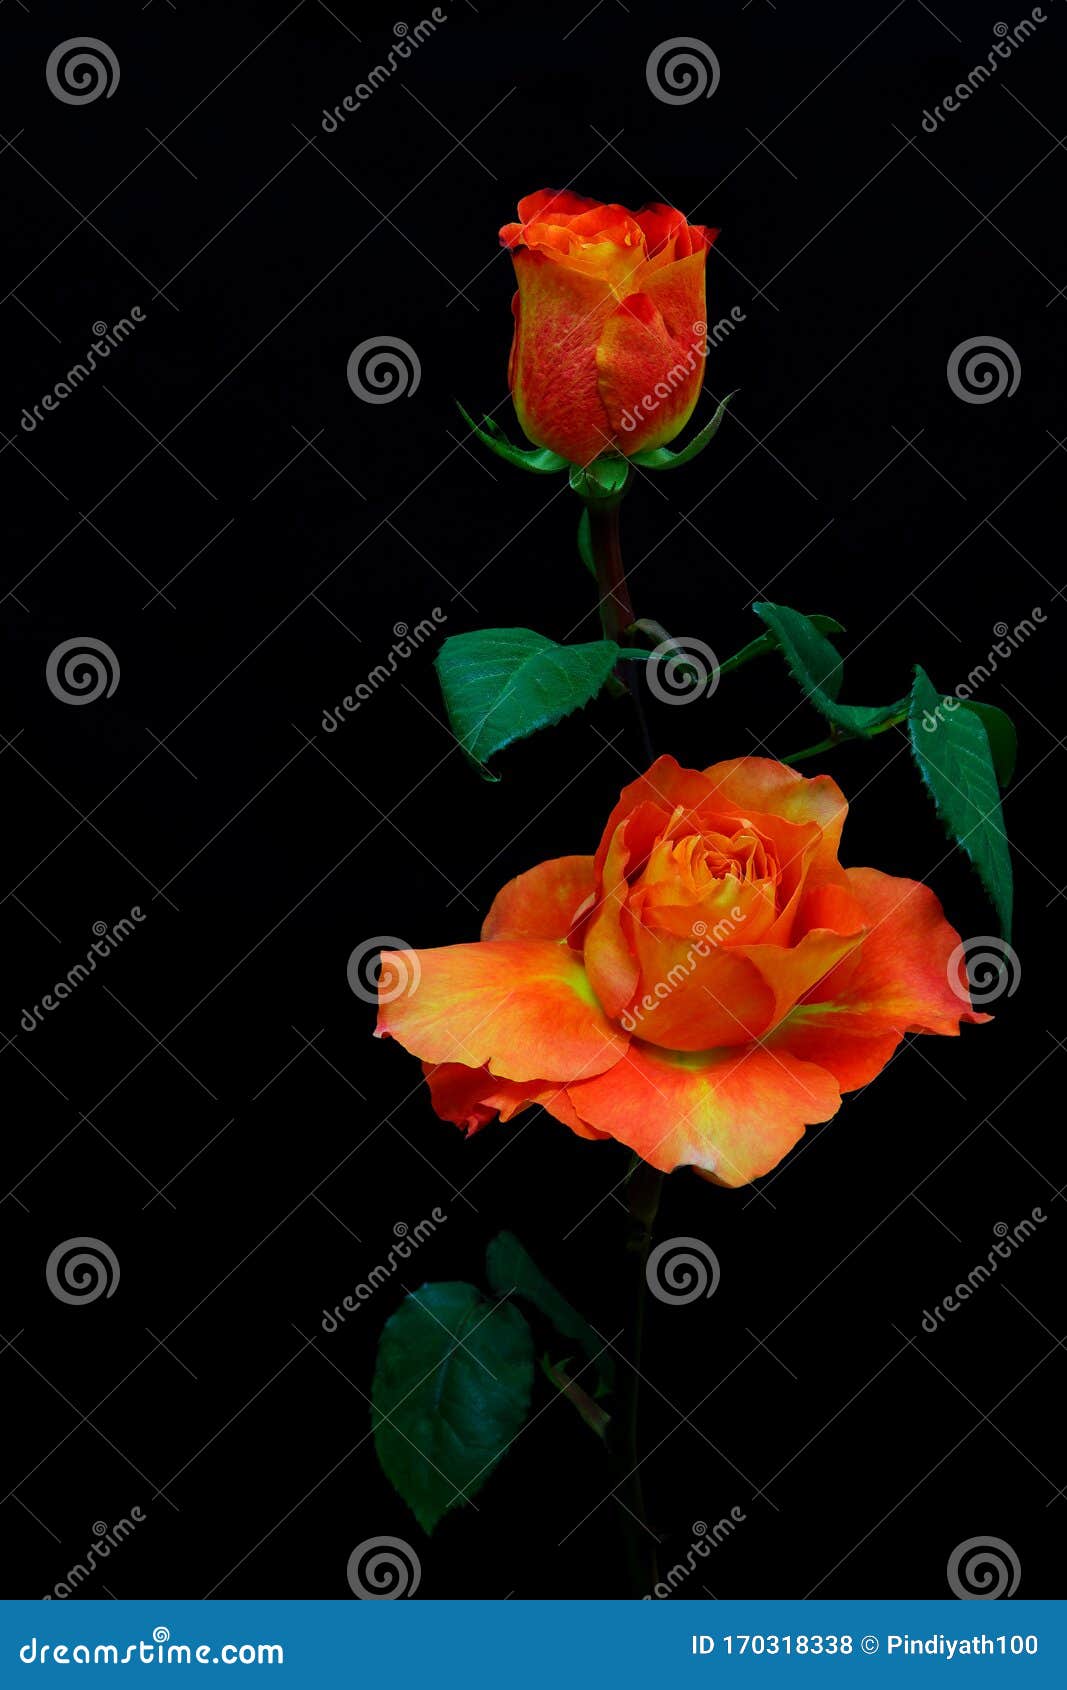 Hoa hồng màu cam rực rỡ trên nền đen là một hiện tượng tuyệt đẹp của thiên nhiên. Các cánh hoa mềm mại và màu sắc tươi sáng tạo nên một bức tranh tuyệt đẹp. Nếu bạn muốn thưởng thức hình ảnh tuyệt vời này, hãy đến xem ngay!